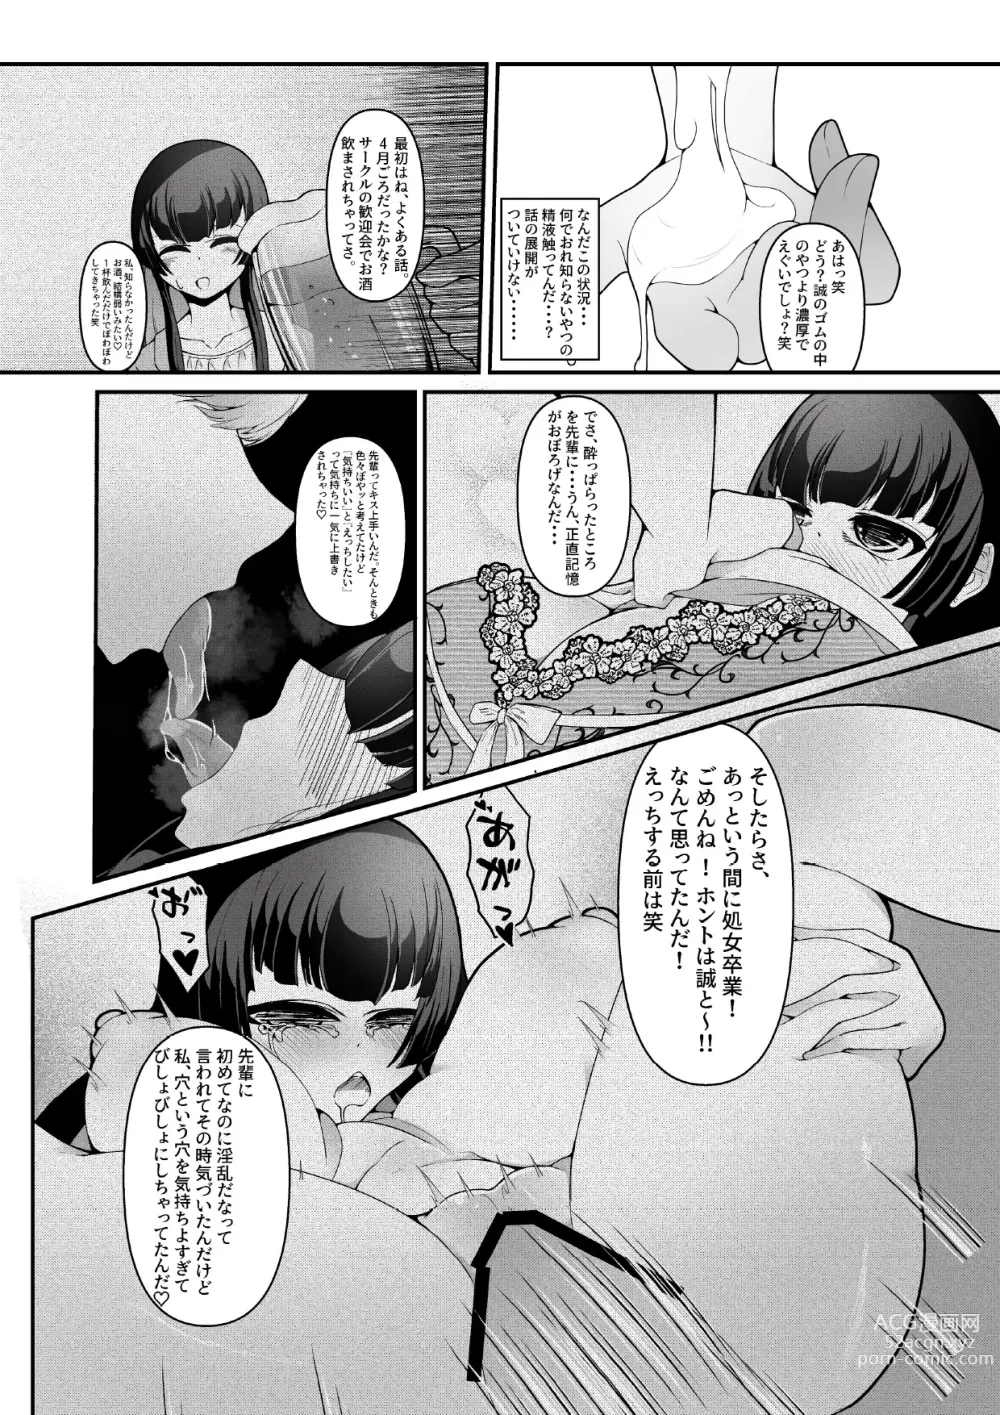 Page 16 of doujinshi Kizuita toki ni wa Otosarete Imashita